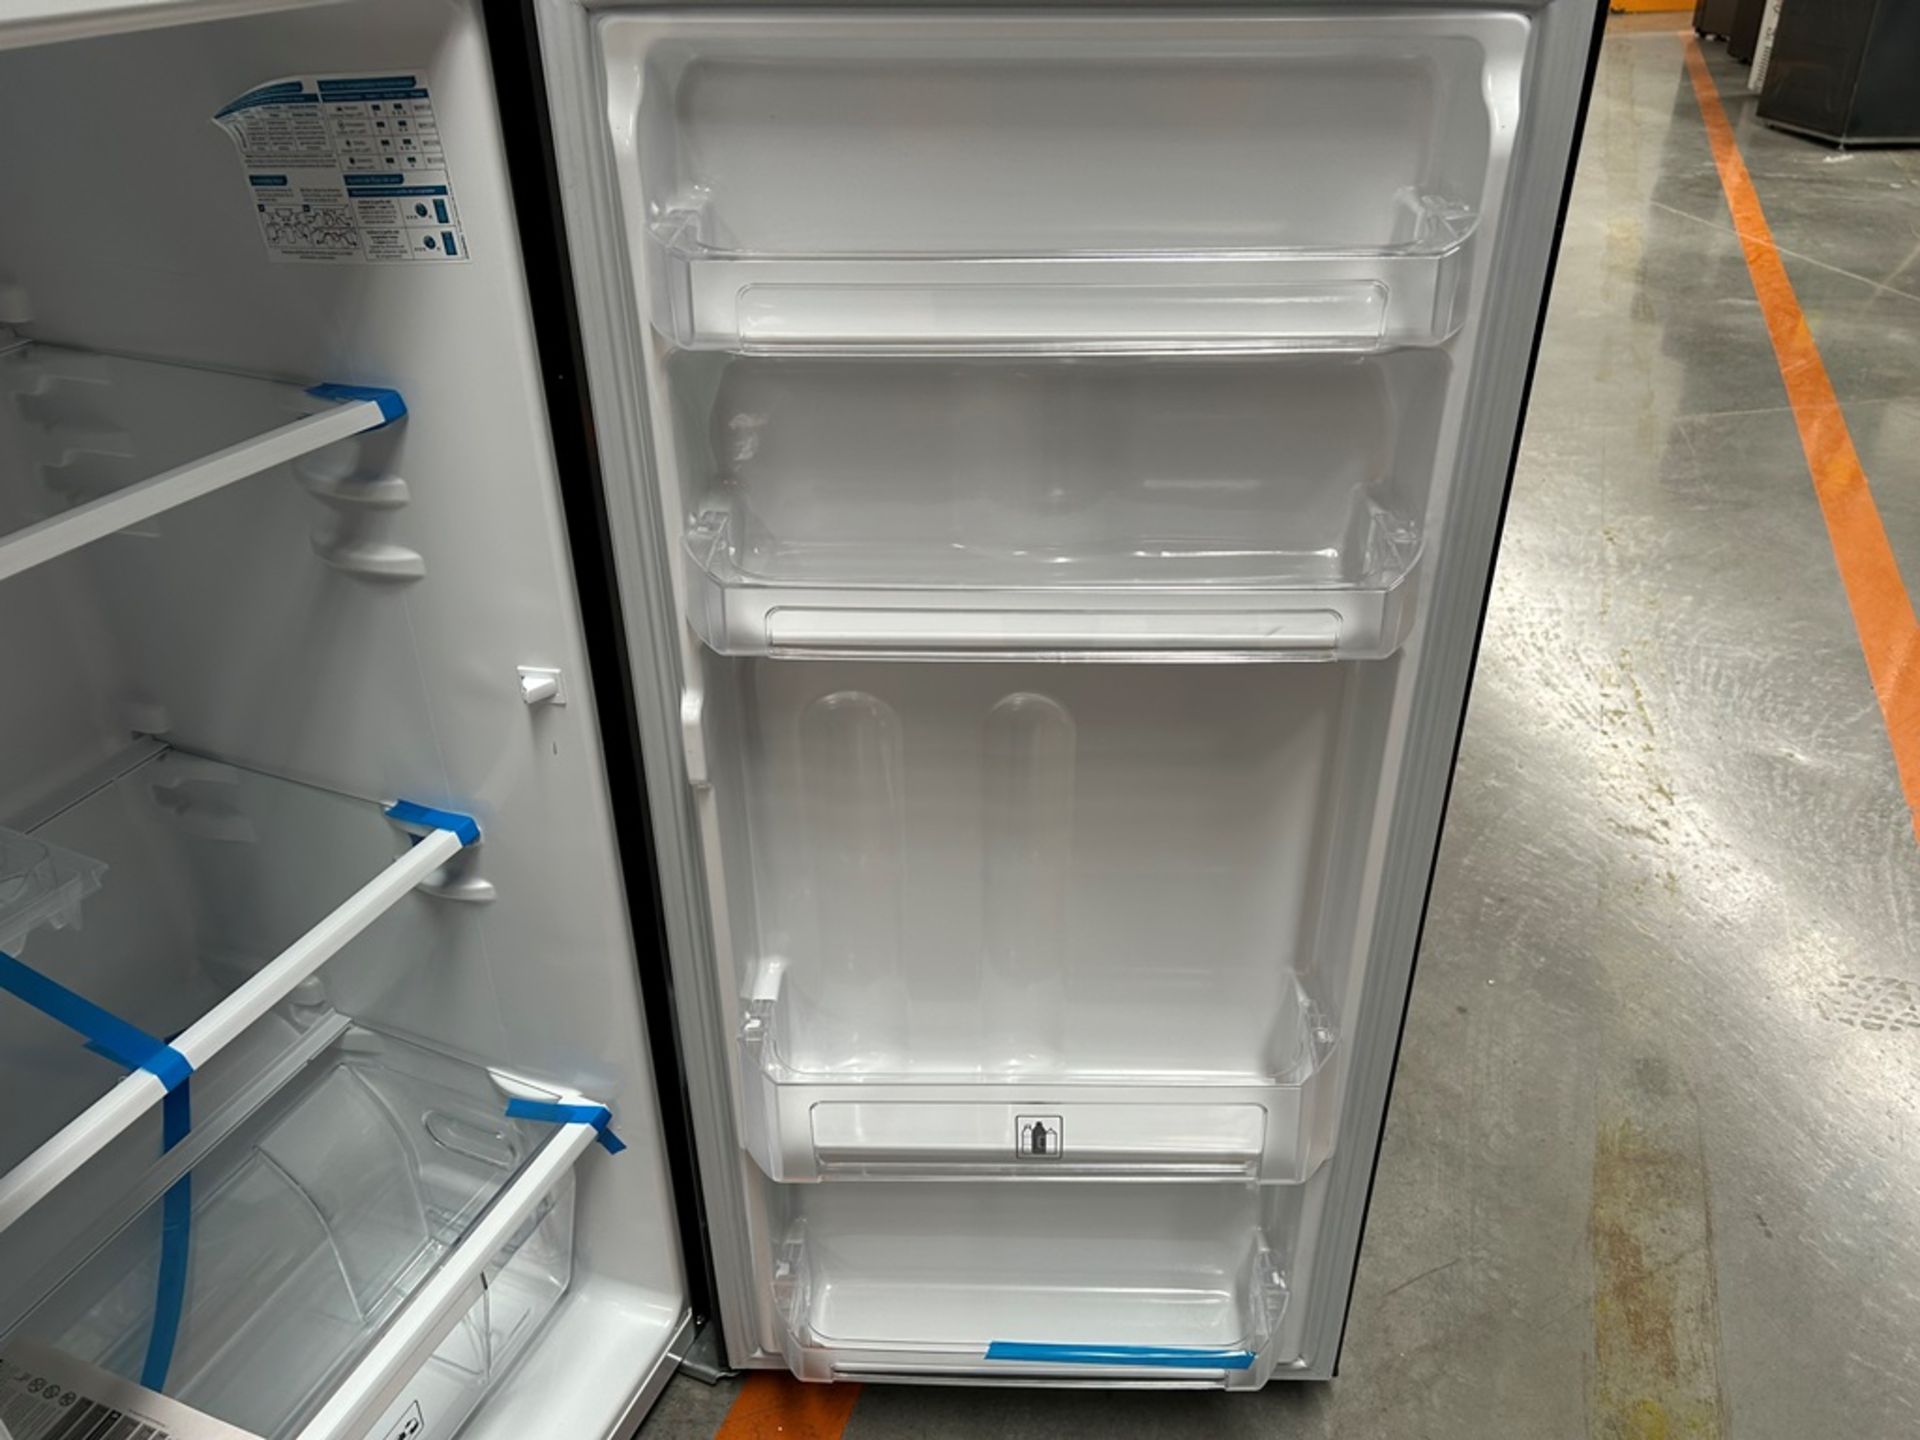 Lote de 2 refrigeradores contiene: 1 refrigerador Marca MABE, Modelo RMA250PVMRP0, Serie 13859, Col - Image 8 of 18